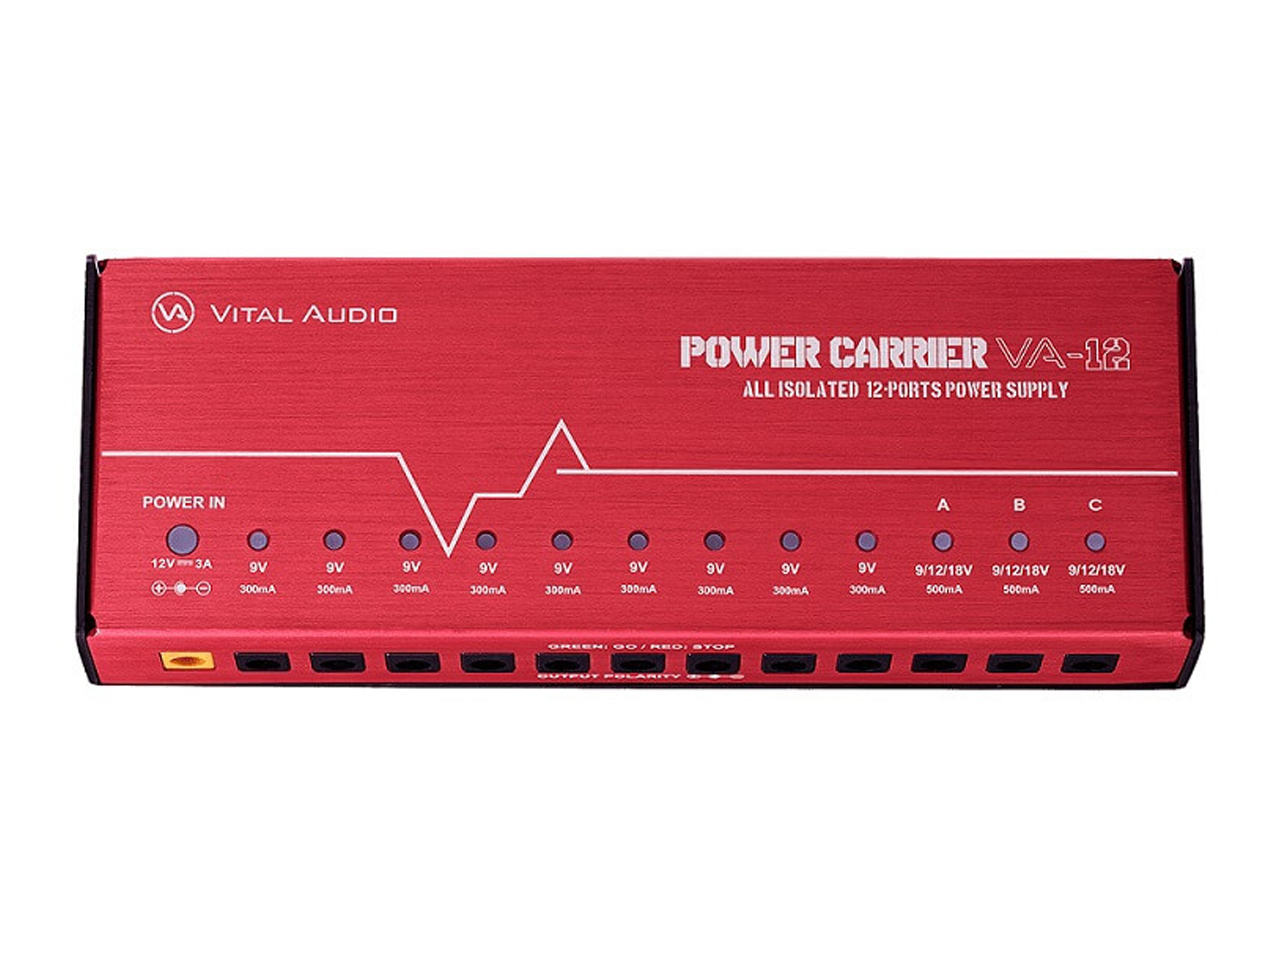 Vital Audio(バイタルオーディオ) POWER CARRIER VA-12 (パワーサプライ) 駅前店